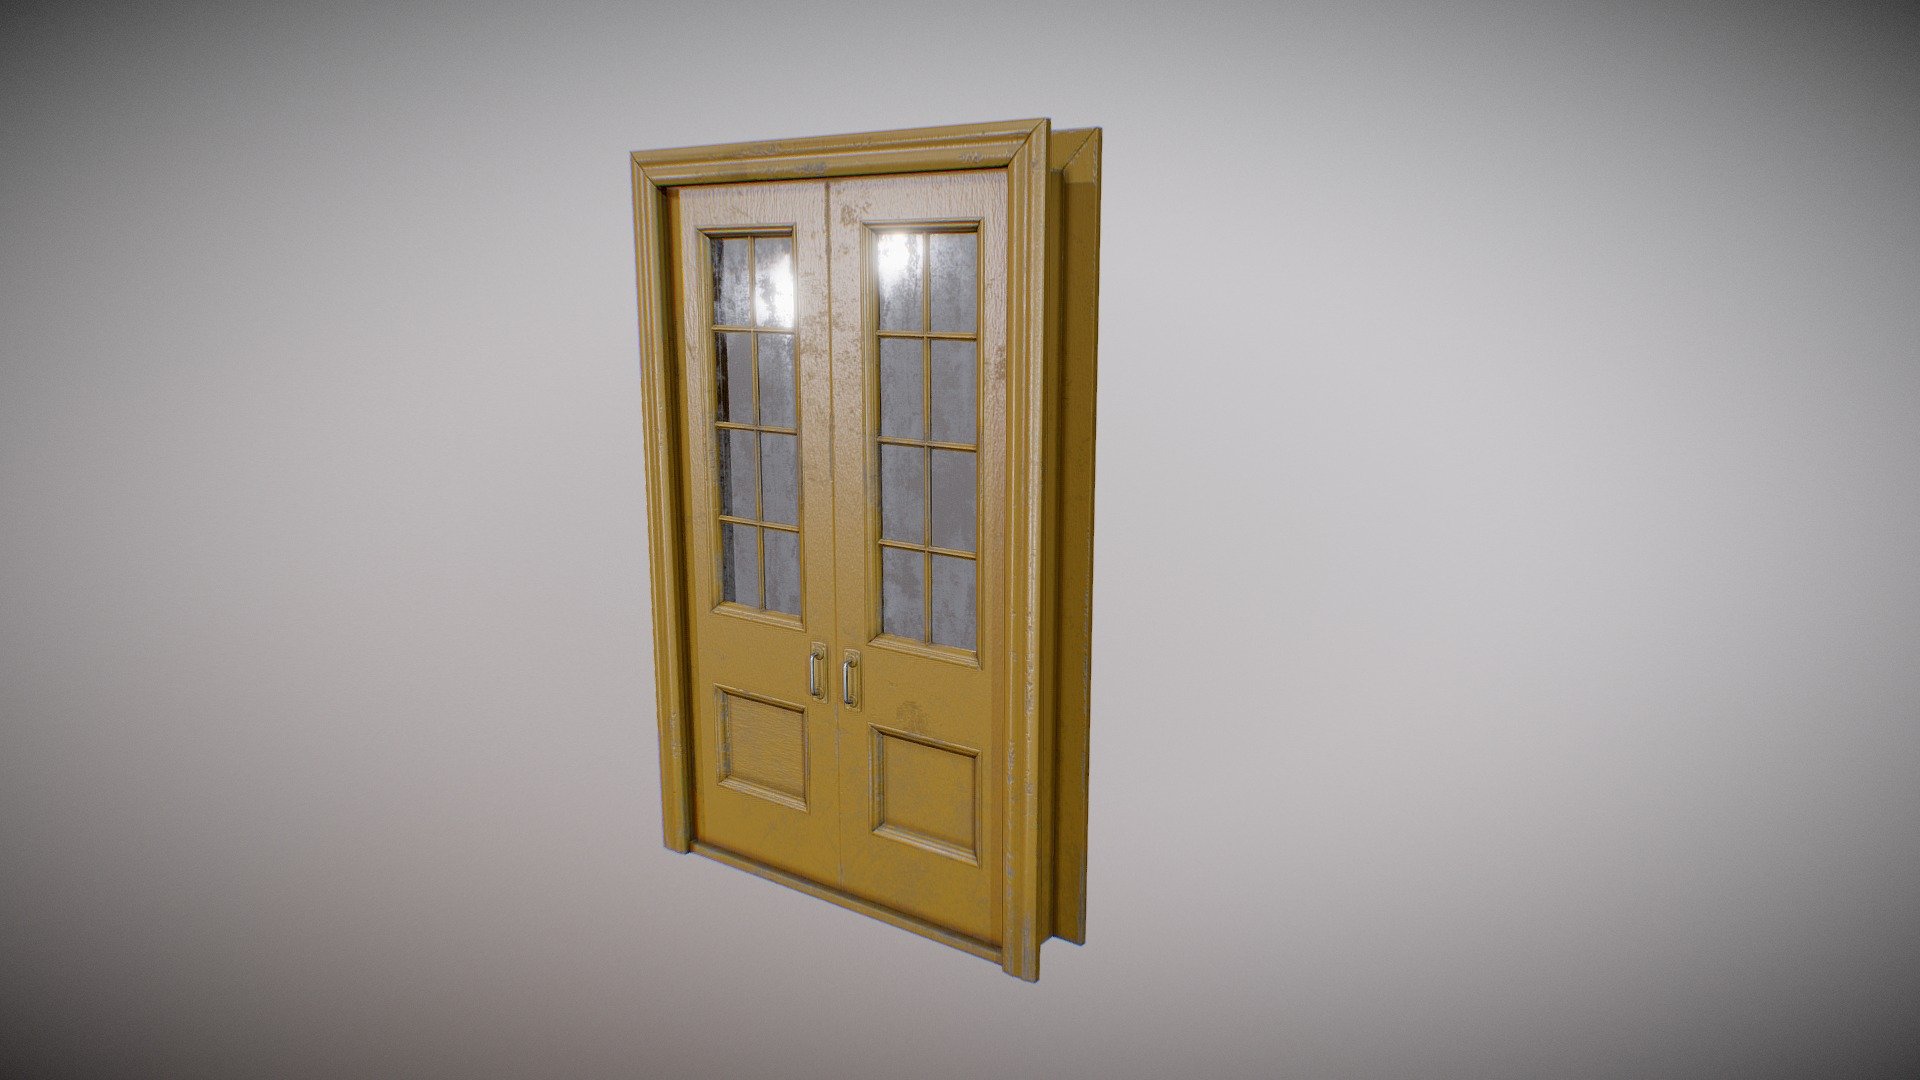 Old wooden door
PBR
Animated - Old door - 3D model by bledr 3d model